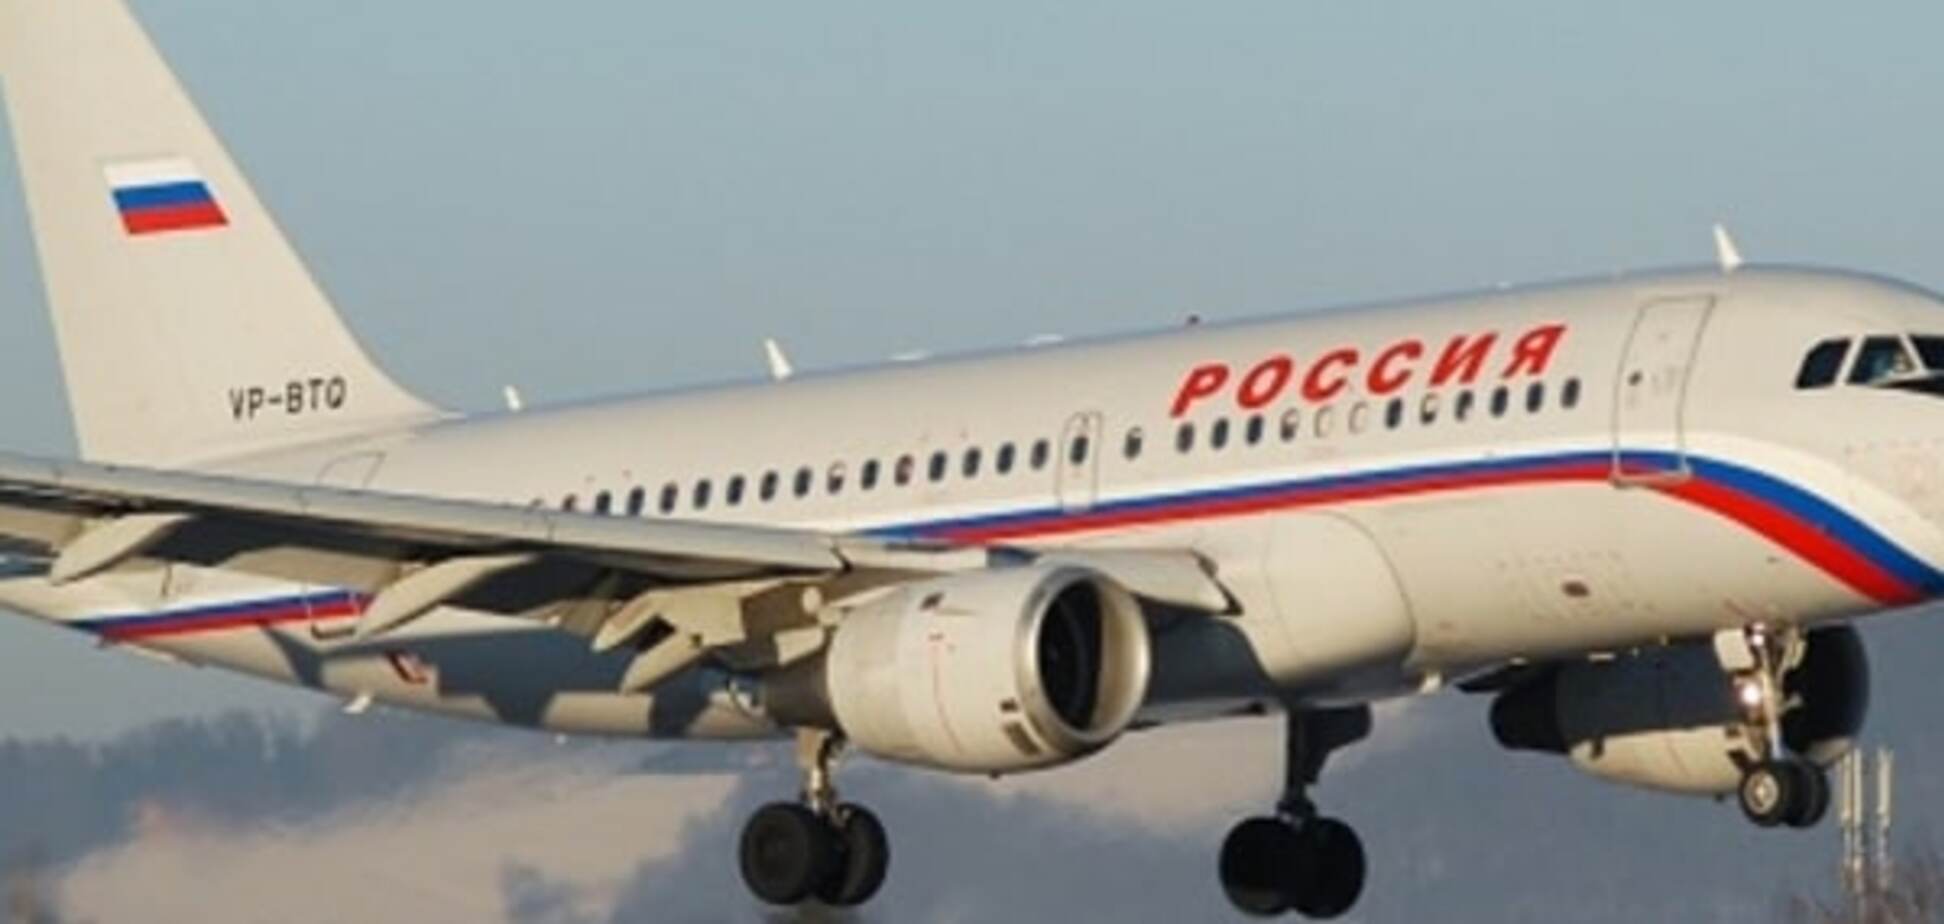 'Це Росія, дитинко': серед багажу в літаку знайшли незвичайного 'пасажира'